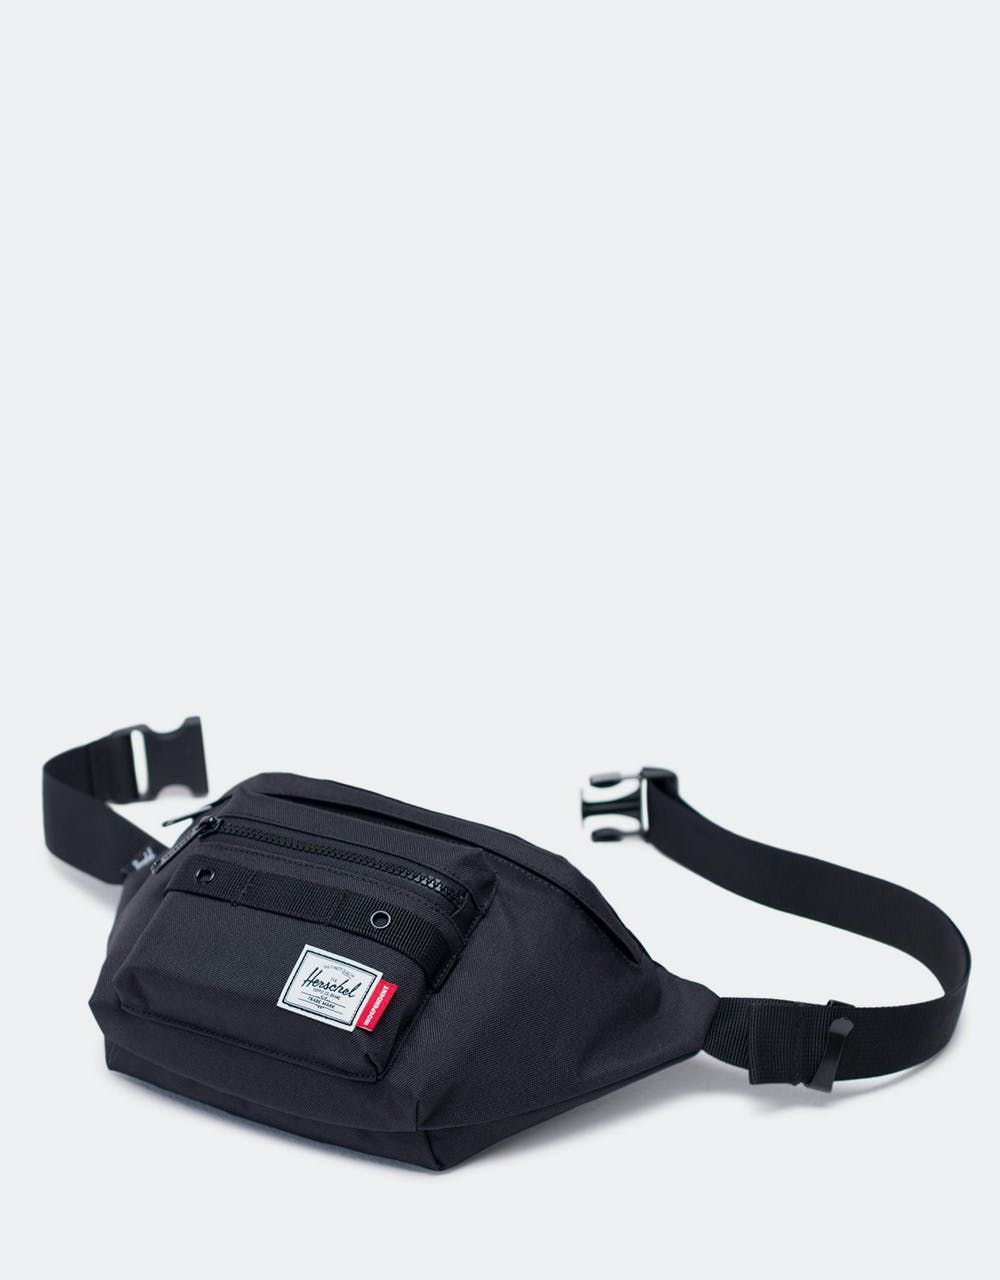 Herschel Supply Co. x Independent Seventeen Cross Body Bag - Black